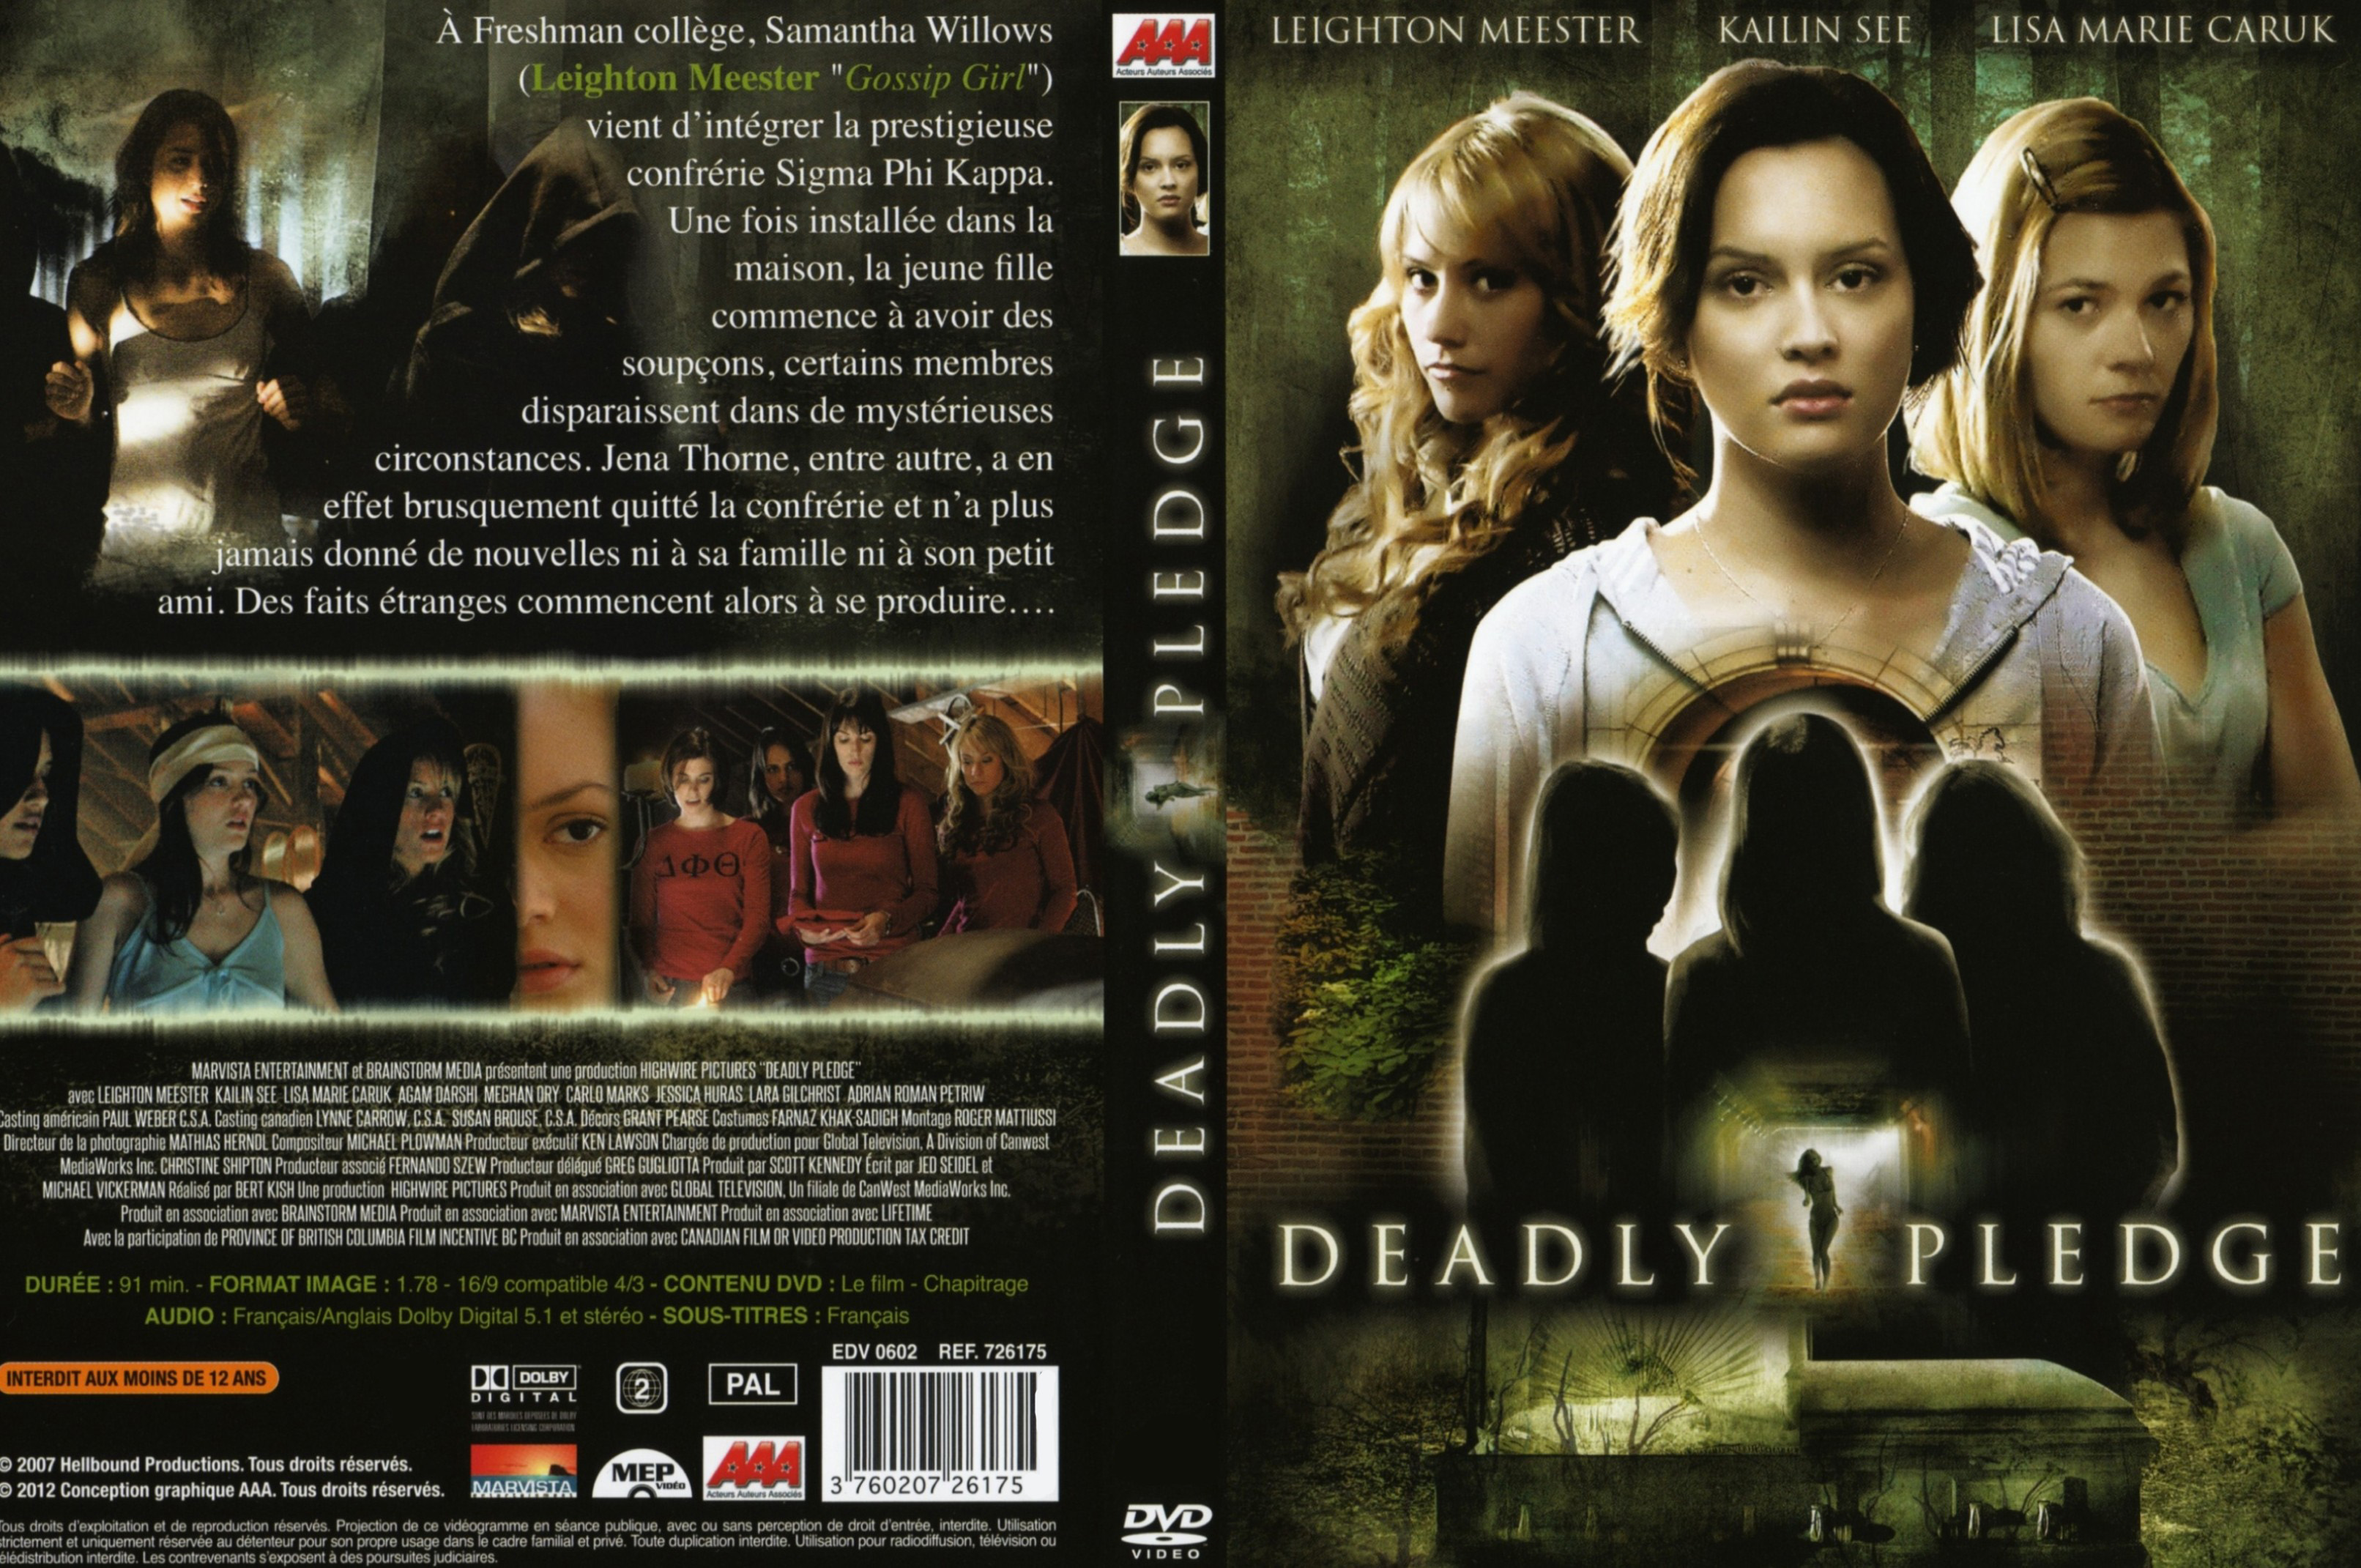 Jaquette DVD Deadly Pledge